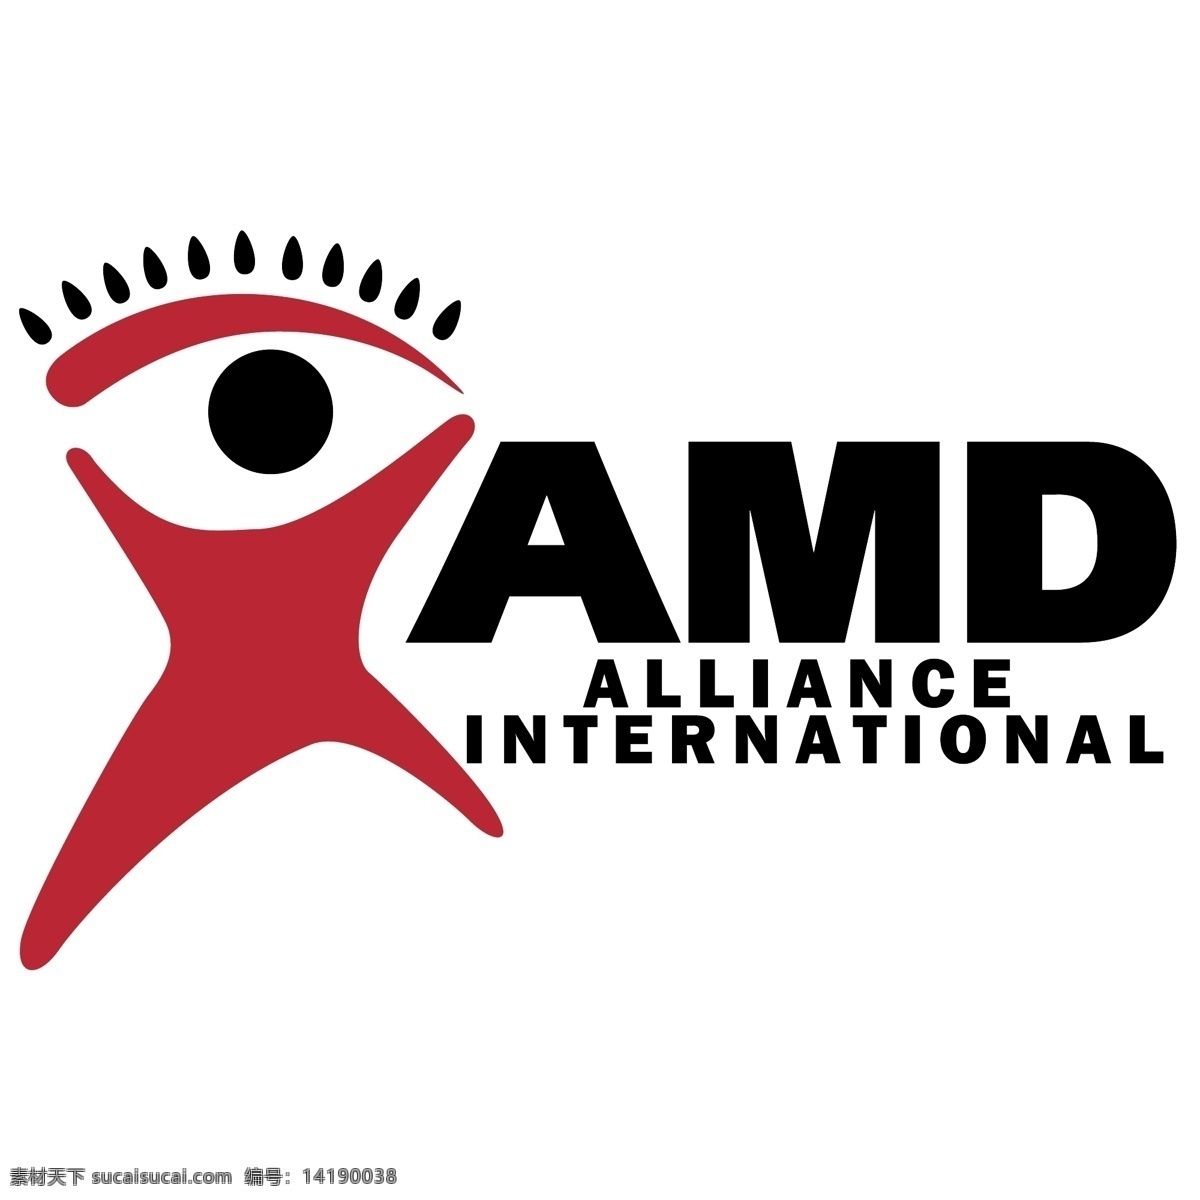 amd 联盟 标识 公司 免费 品牌 品牌标识 商标 矢量标志下载 免费矢量标识 矢量 psd源文件 logo设计